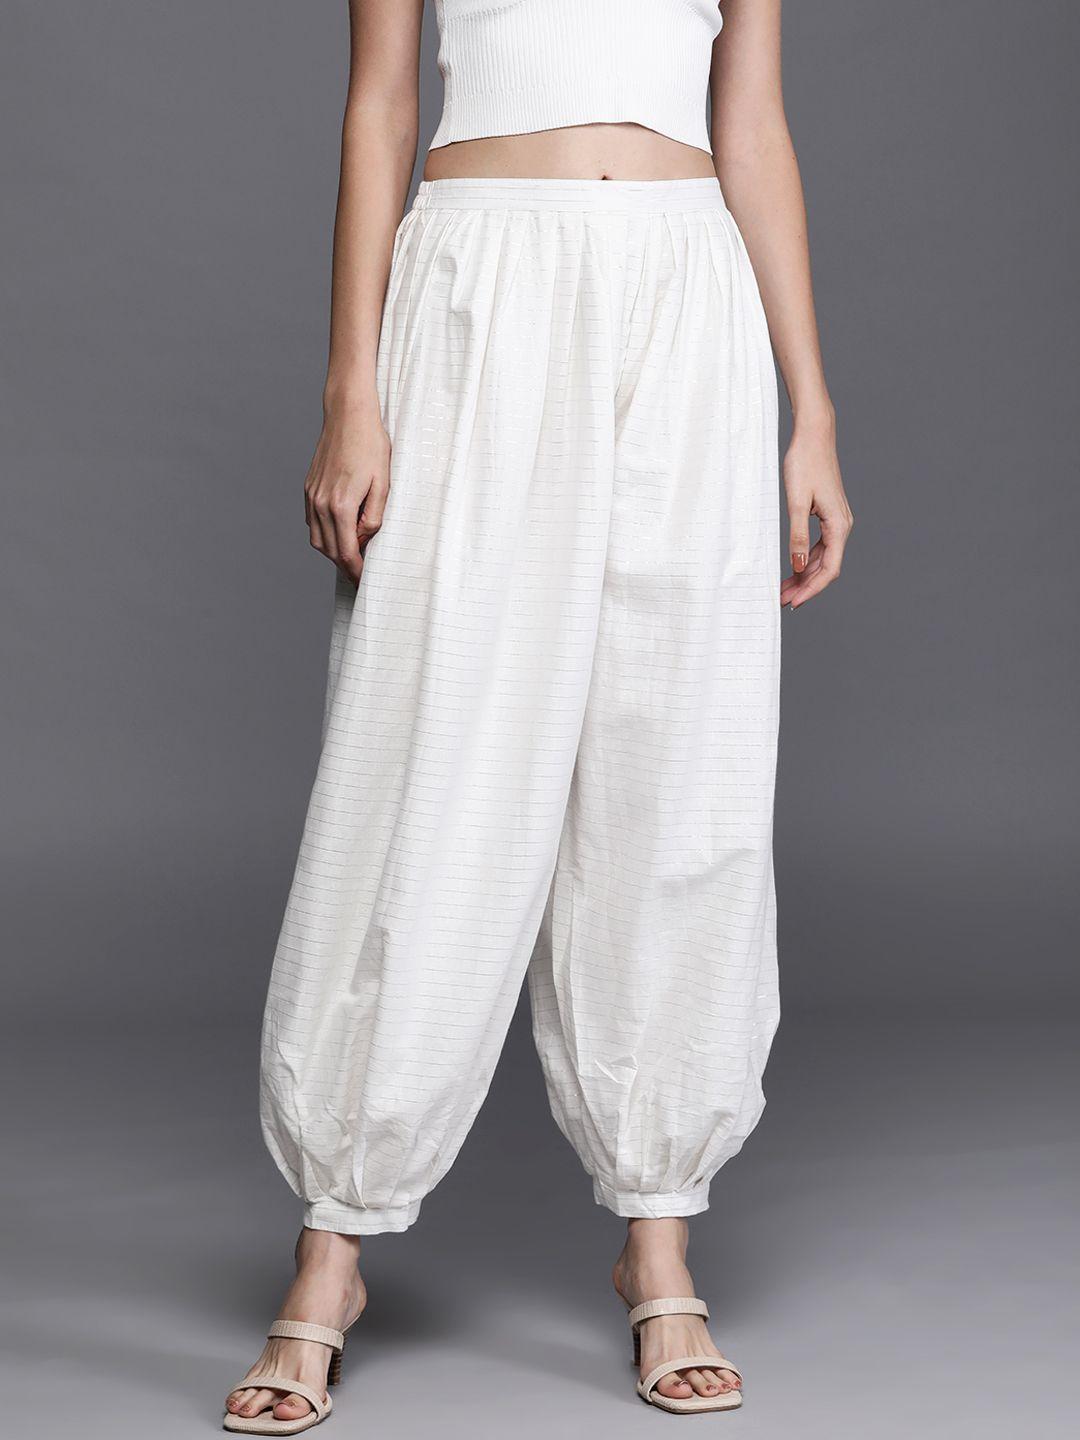 libas-women-white-&-grey-striped-slim-fit-cotton-salwar